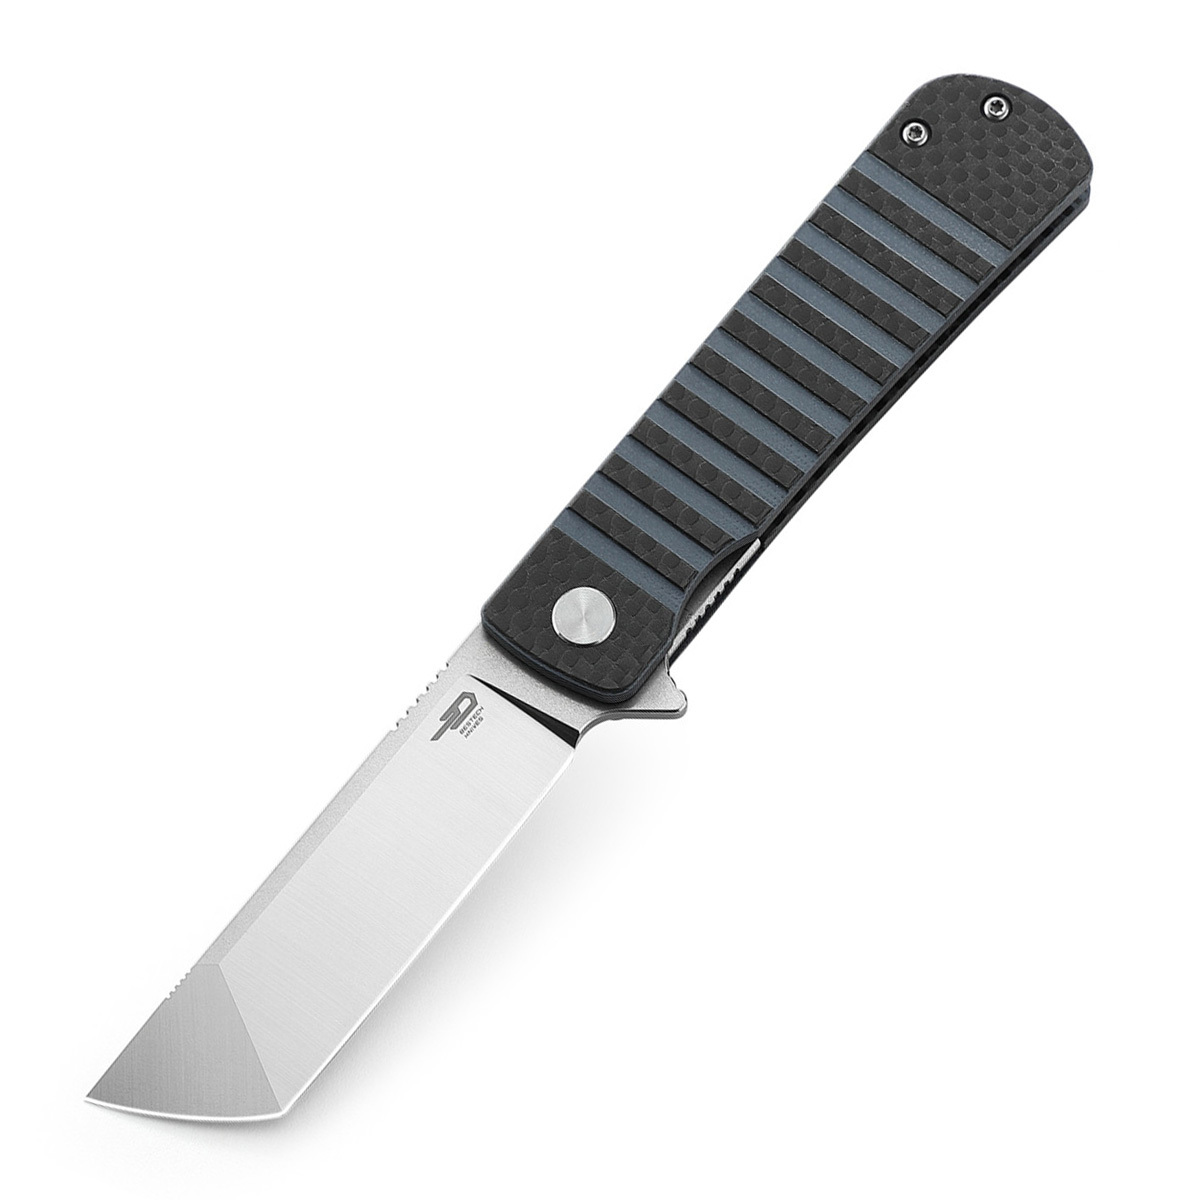 Складной нож Bestech Titan, сталь 154CM, рукоять черно-синяя G10/карбон